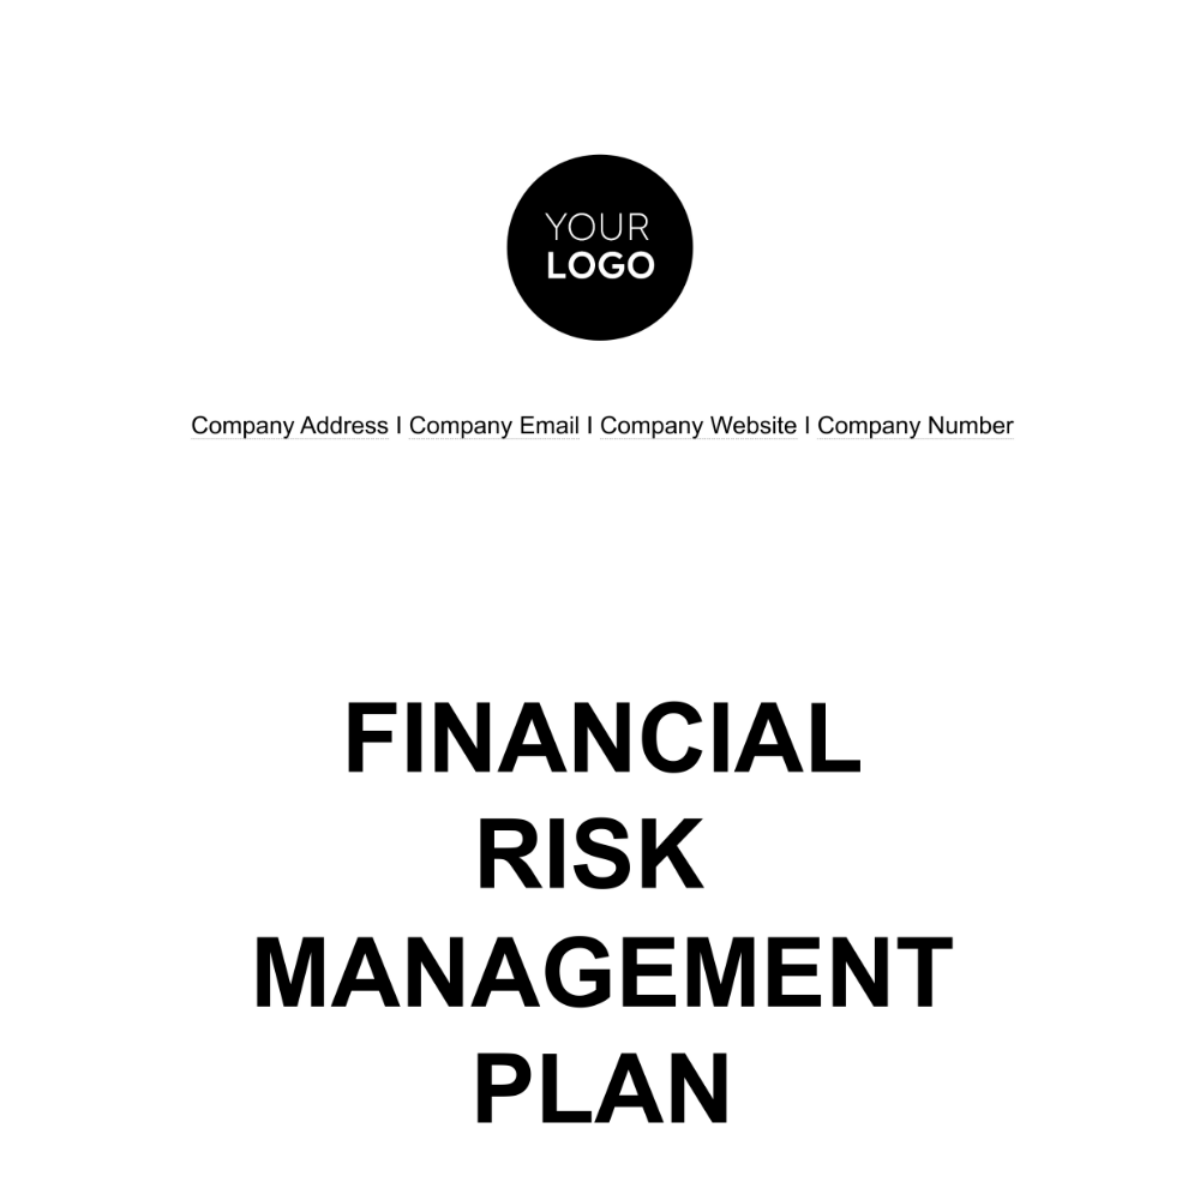 Financial Risk Management Plan Template